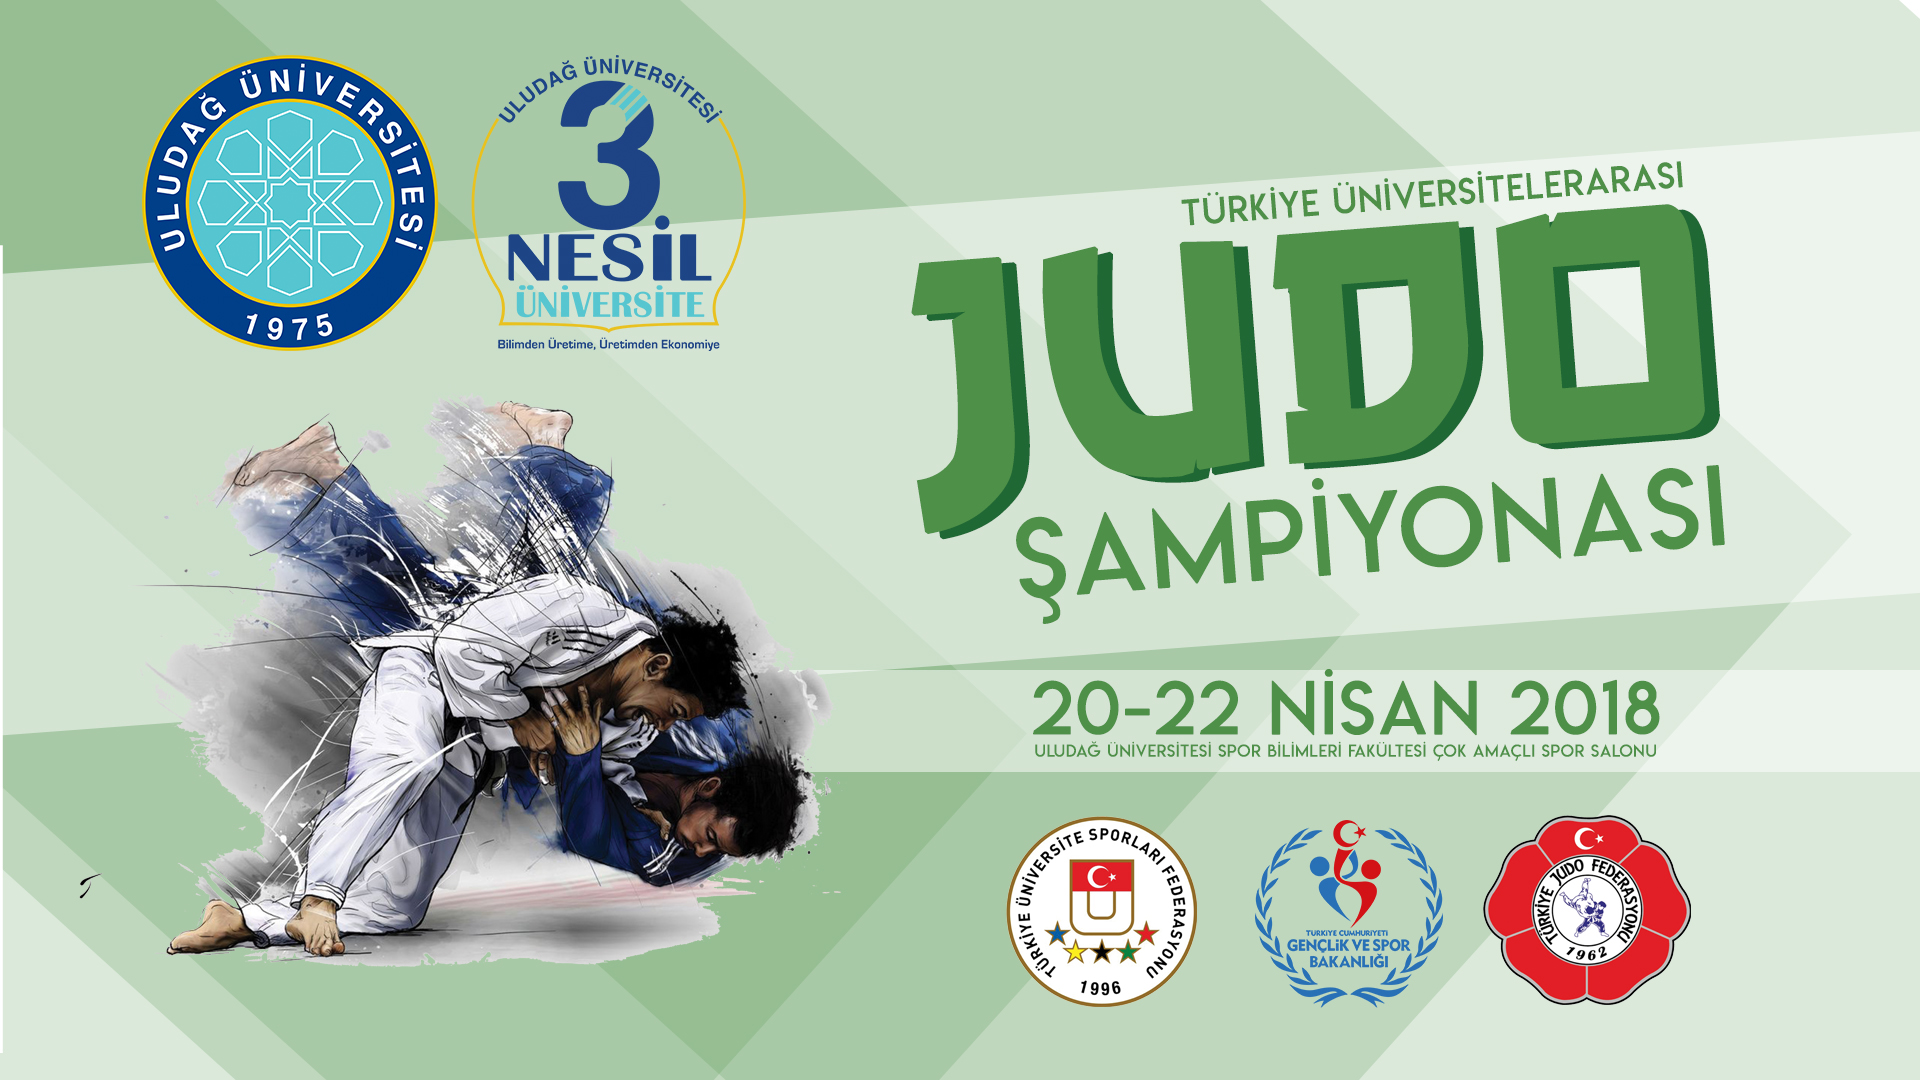  Üniversitelerarası Türkiye Judo Şampiyonası Uludağ Üniversitesi’nde başlıyor 